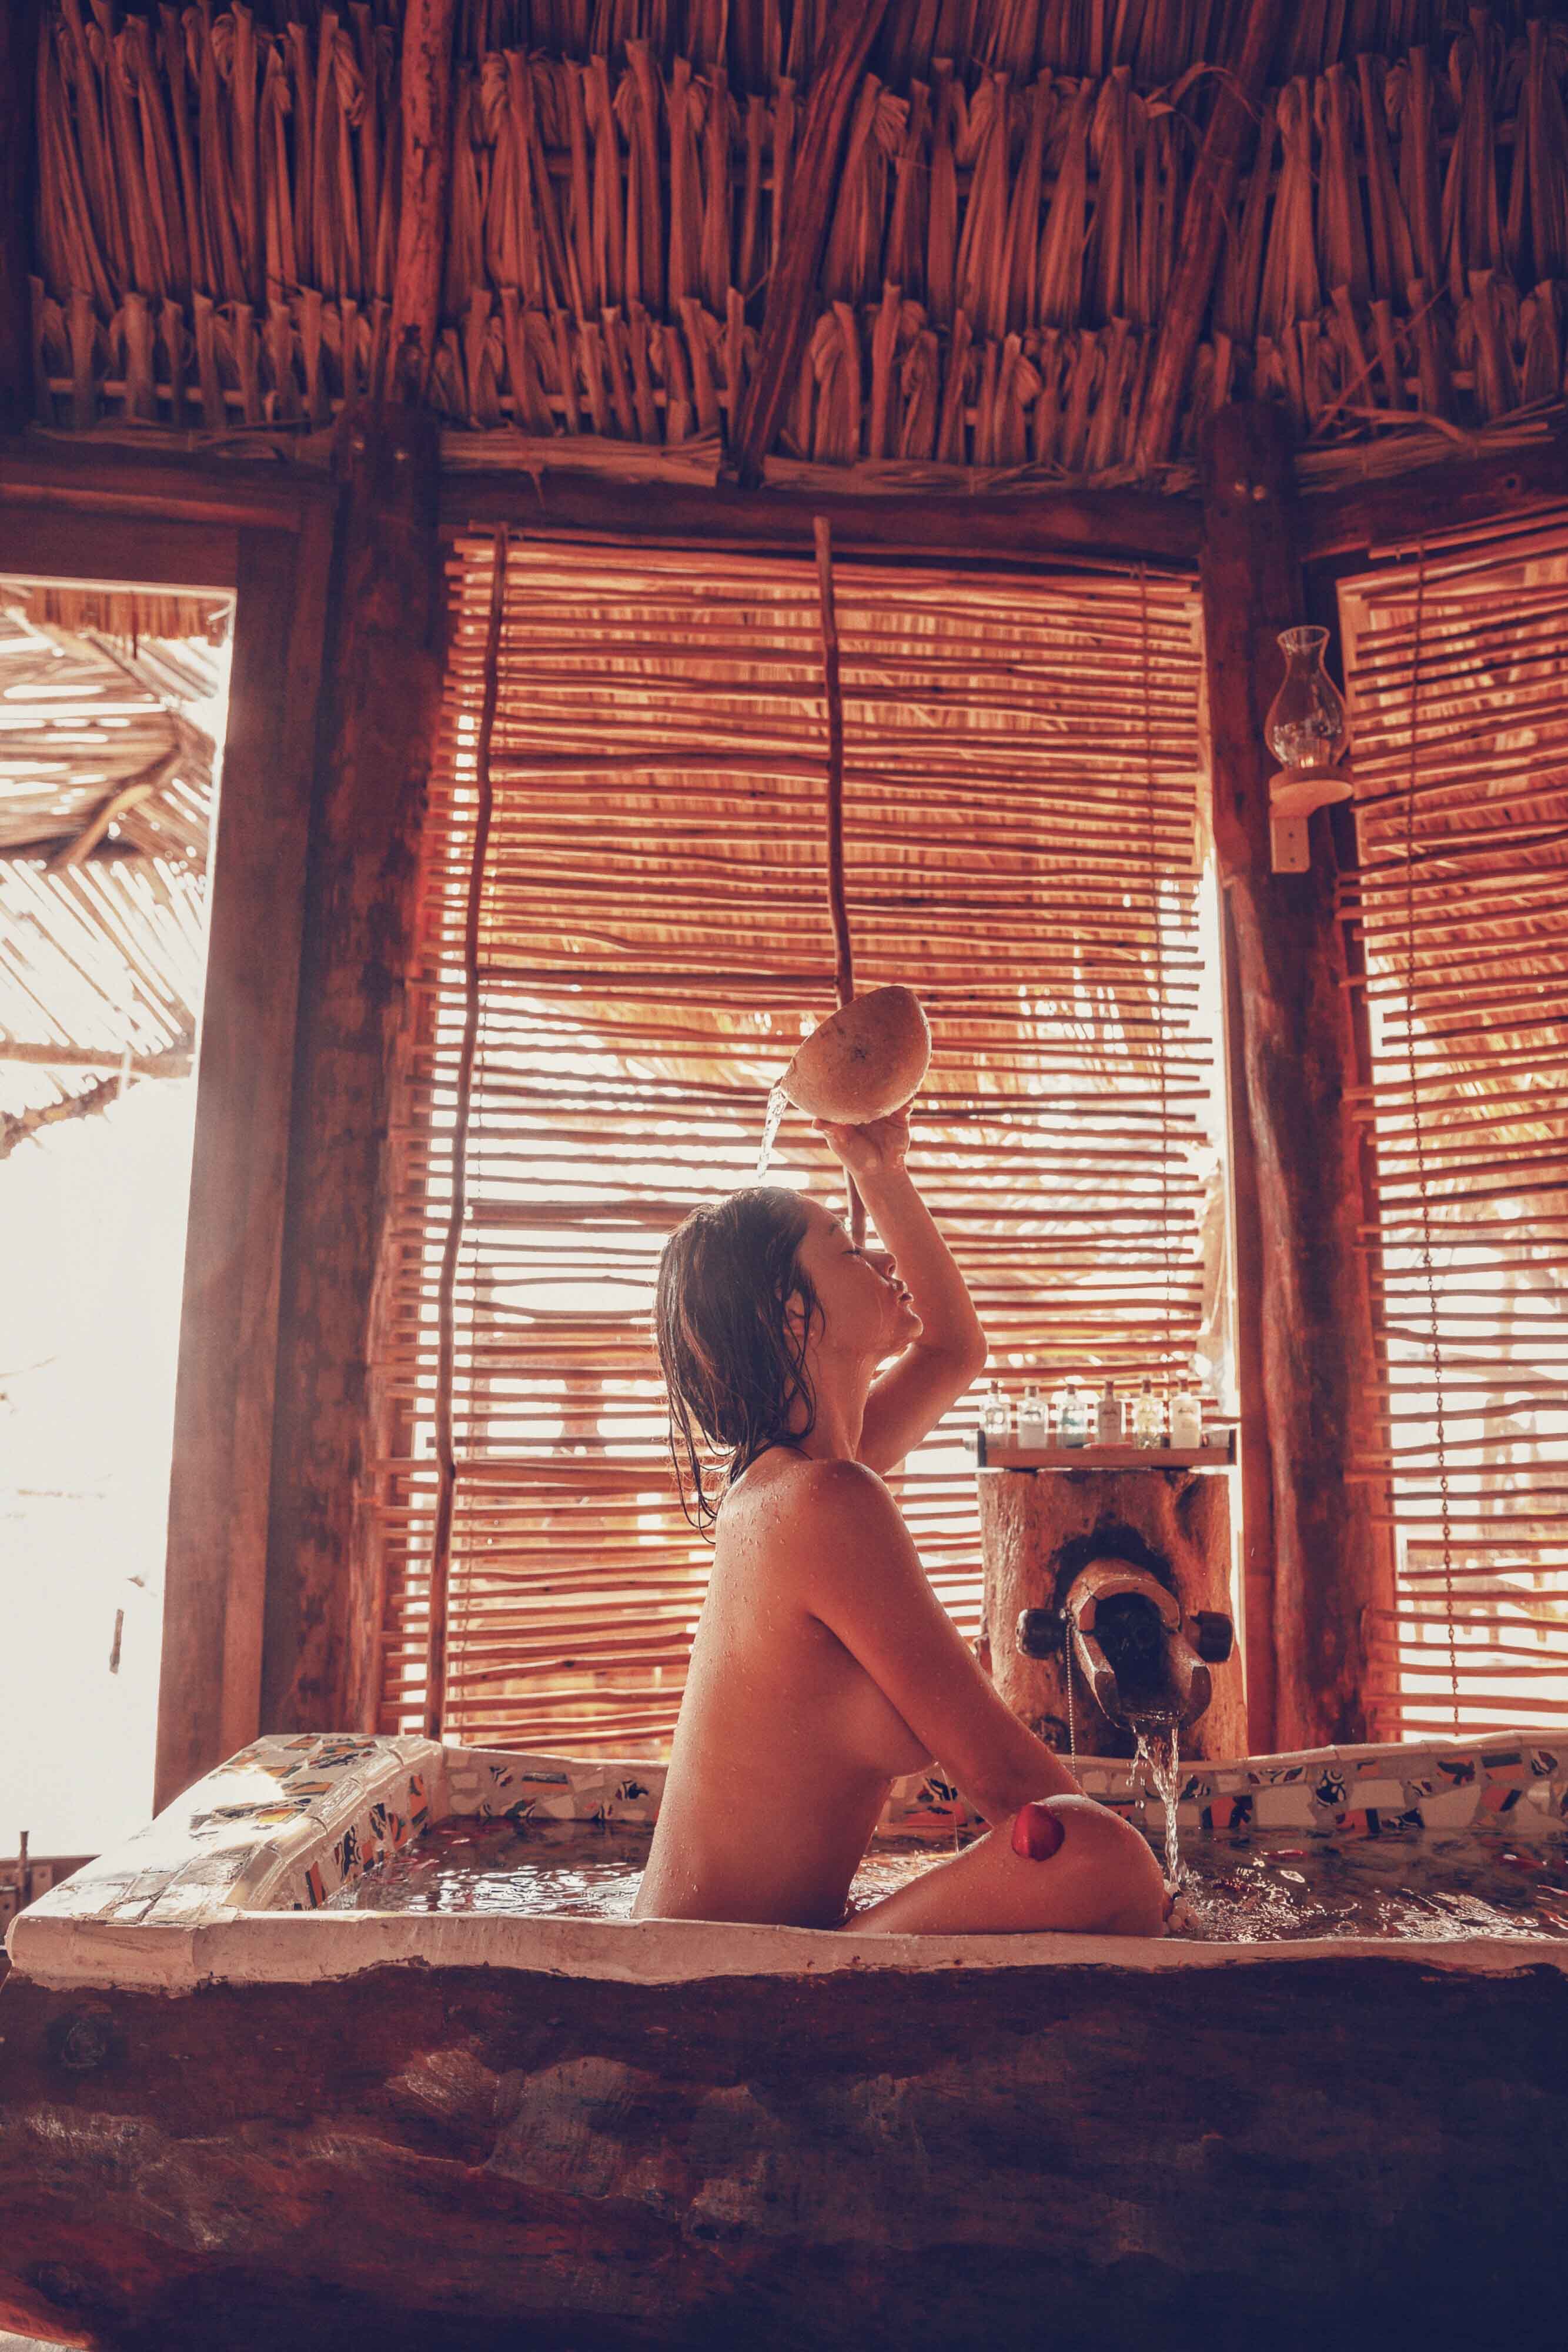 Arianny Celeste nude in TULUM MEXICO - Badboi photo shoot 20x UHQ photos 26.jpg